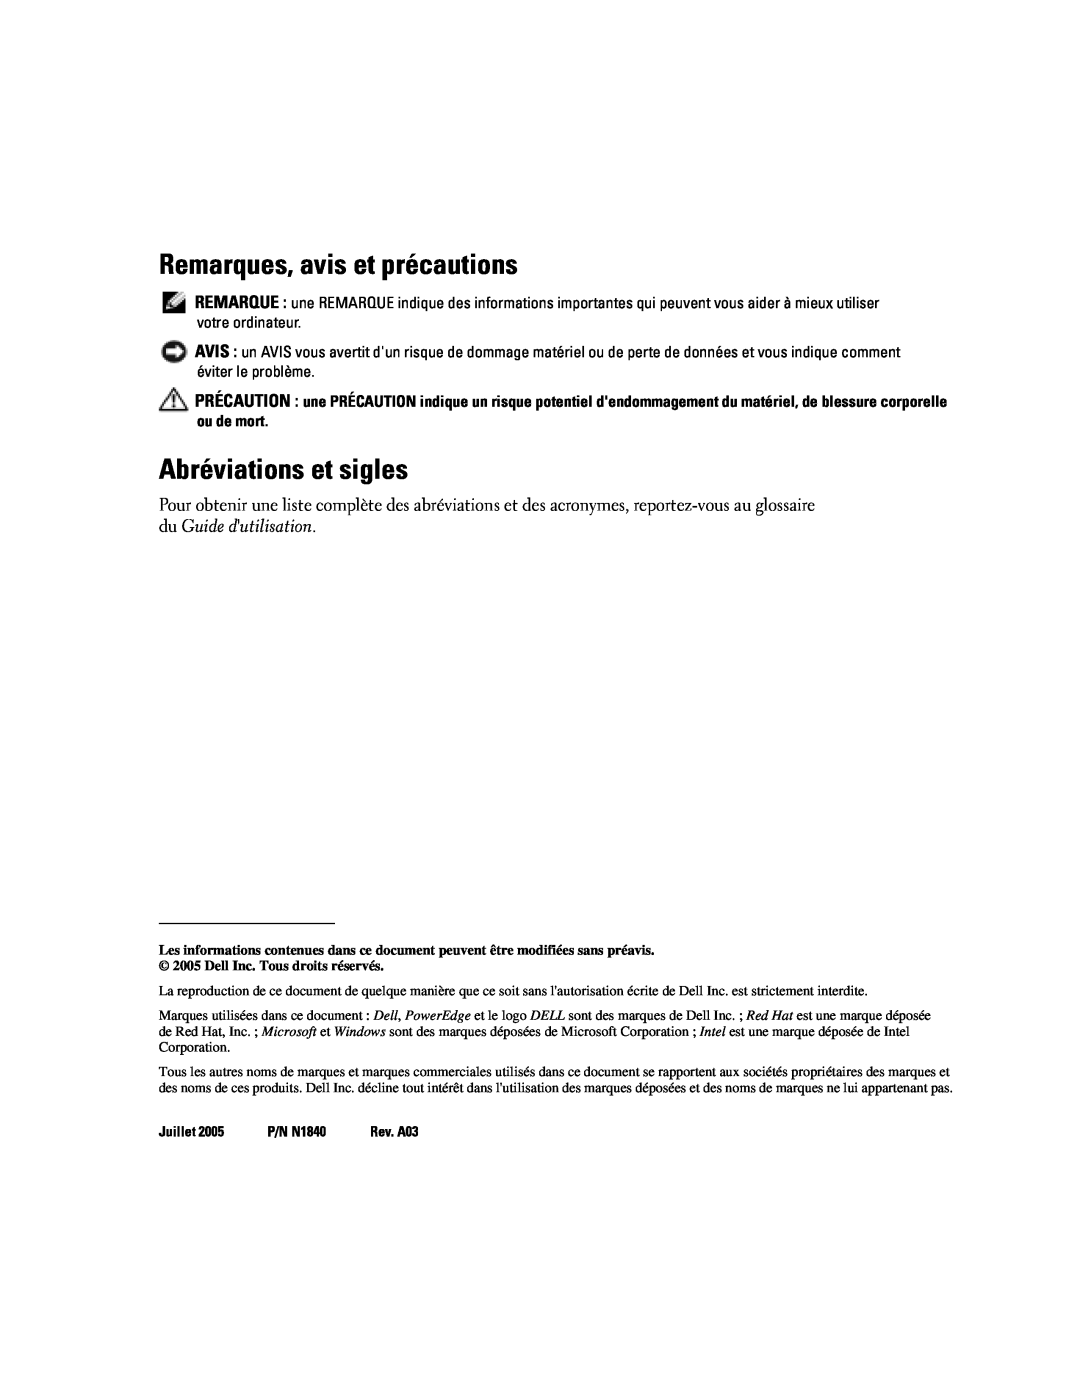 Dell 2850 manual Remarques, avis et précautions, Abréviations et sigles 